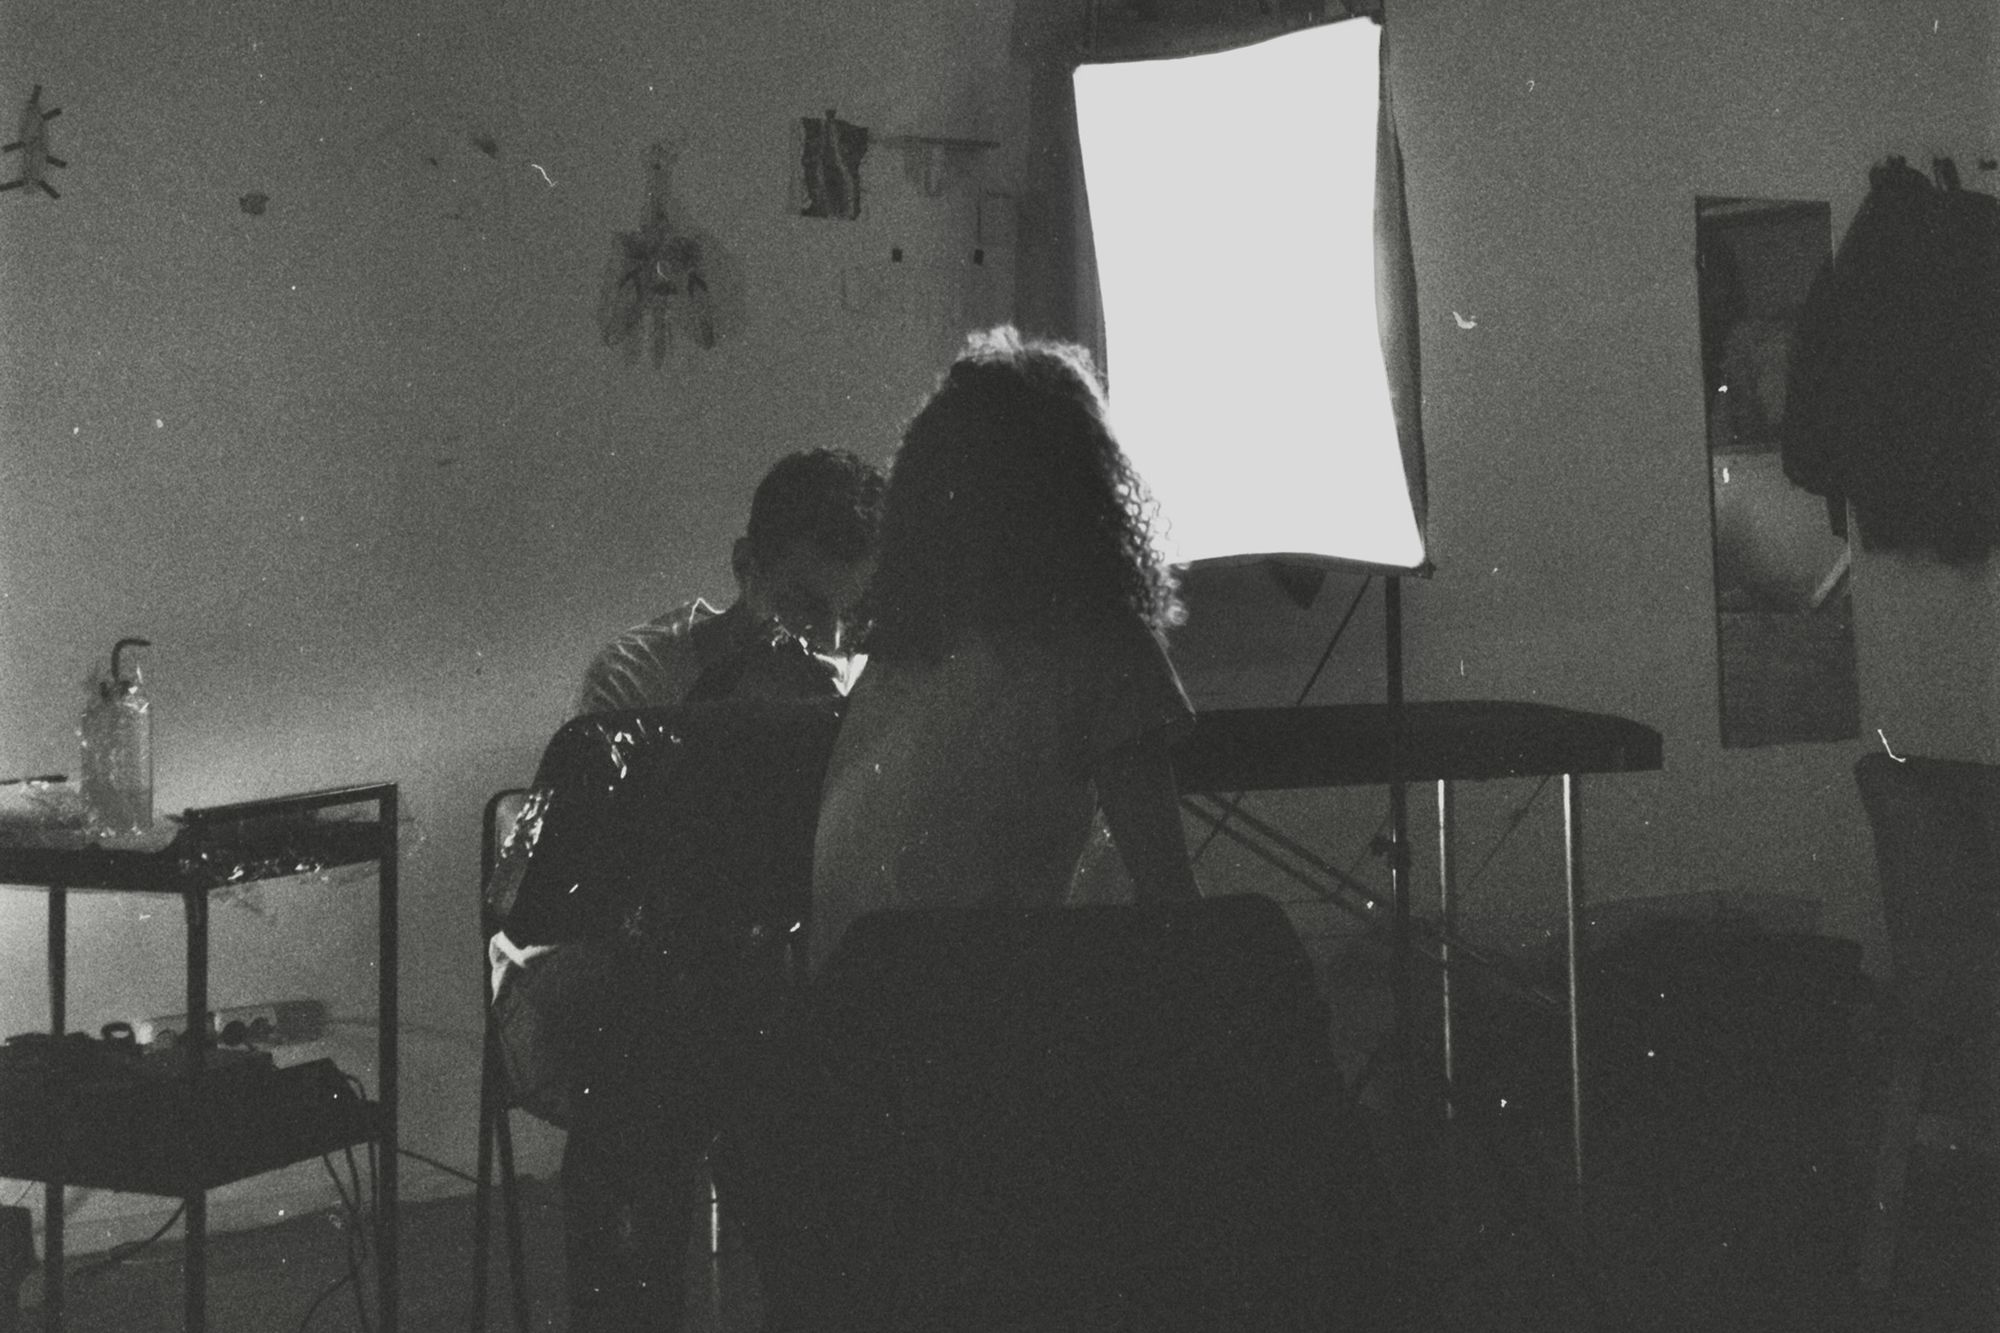  Черно-белое пленочное фото, женщина сидит спиной, перед ней мужчина набивает ей на руке татуировку